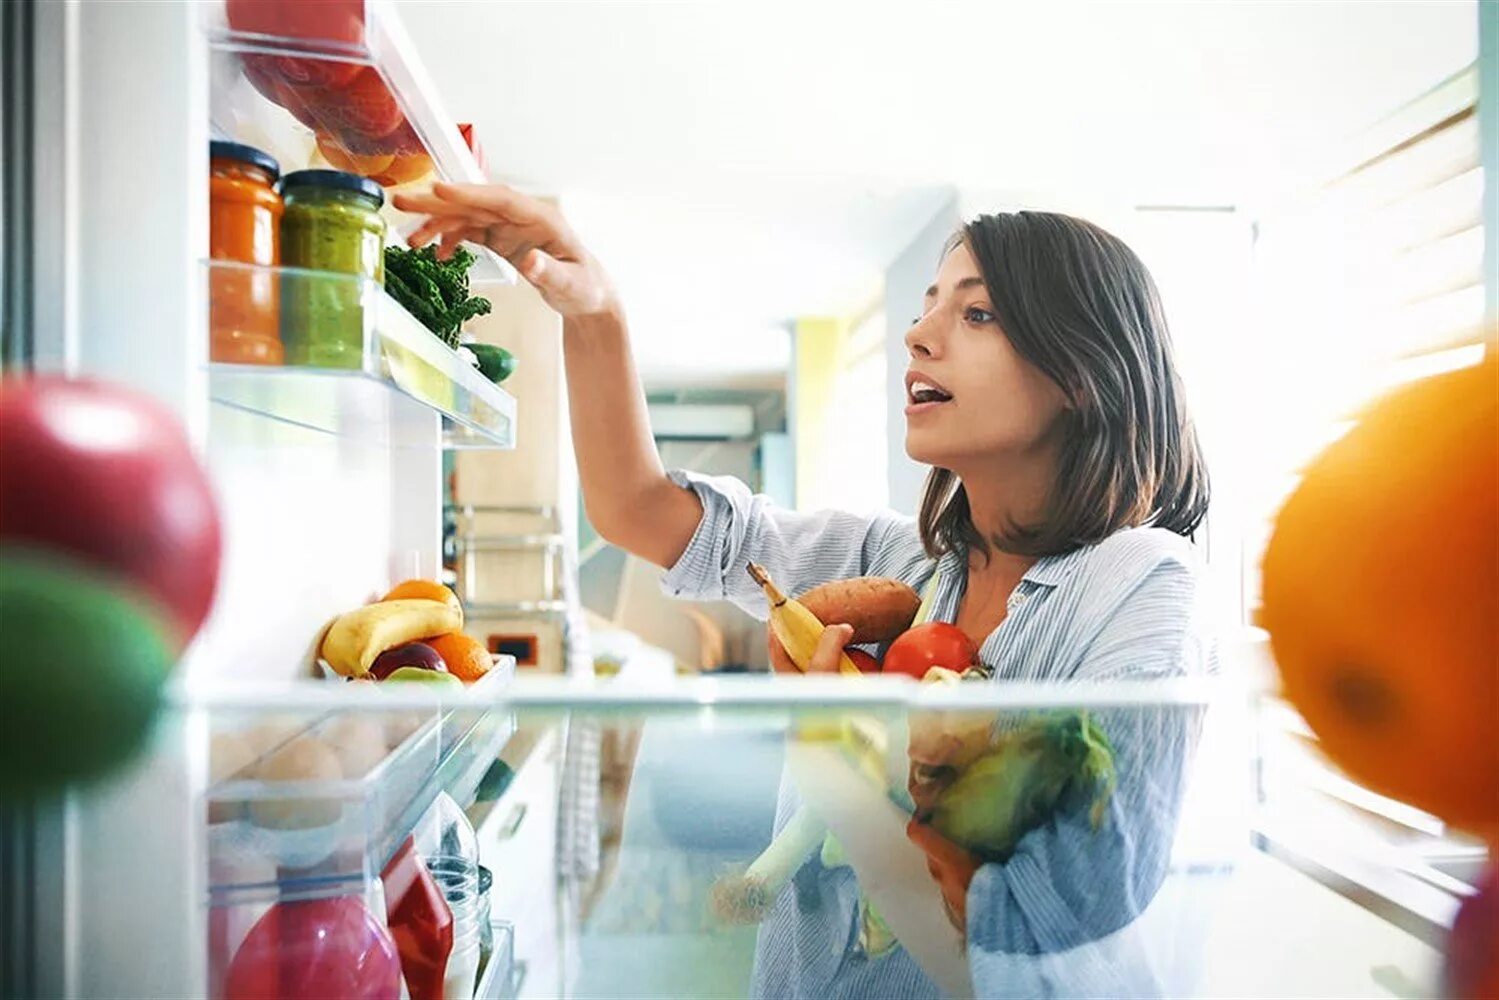 Холодильник с продуктами. Открытый холодильник с едой. Холодильник для овощей. Женщина у холодильника.